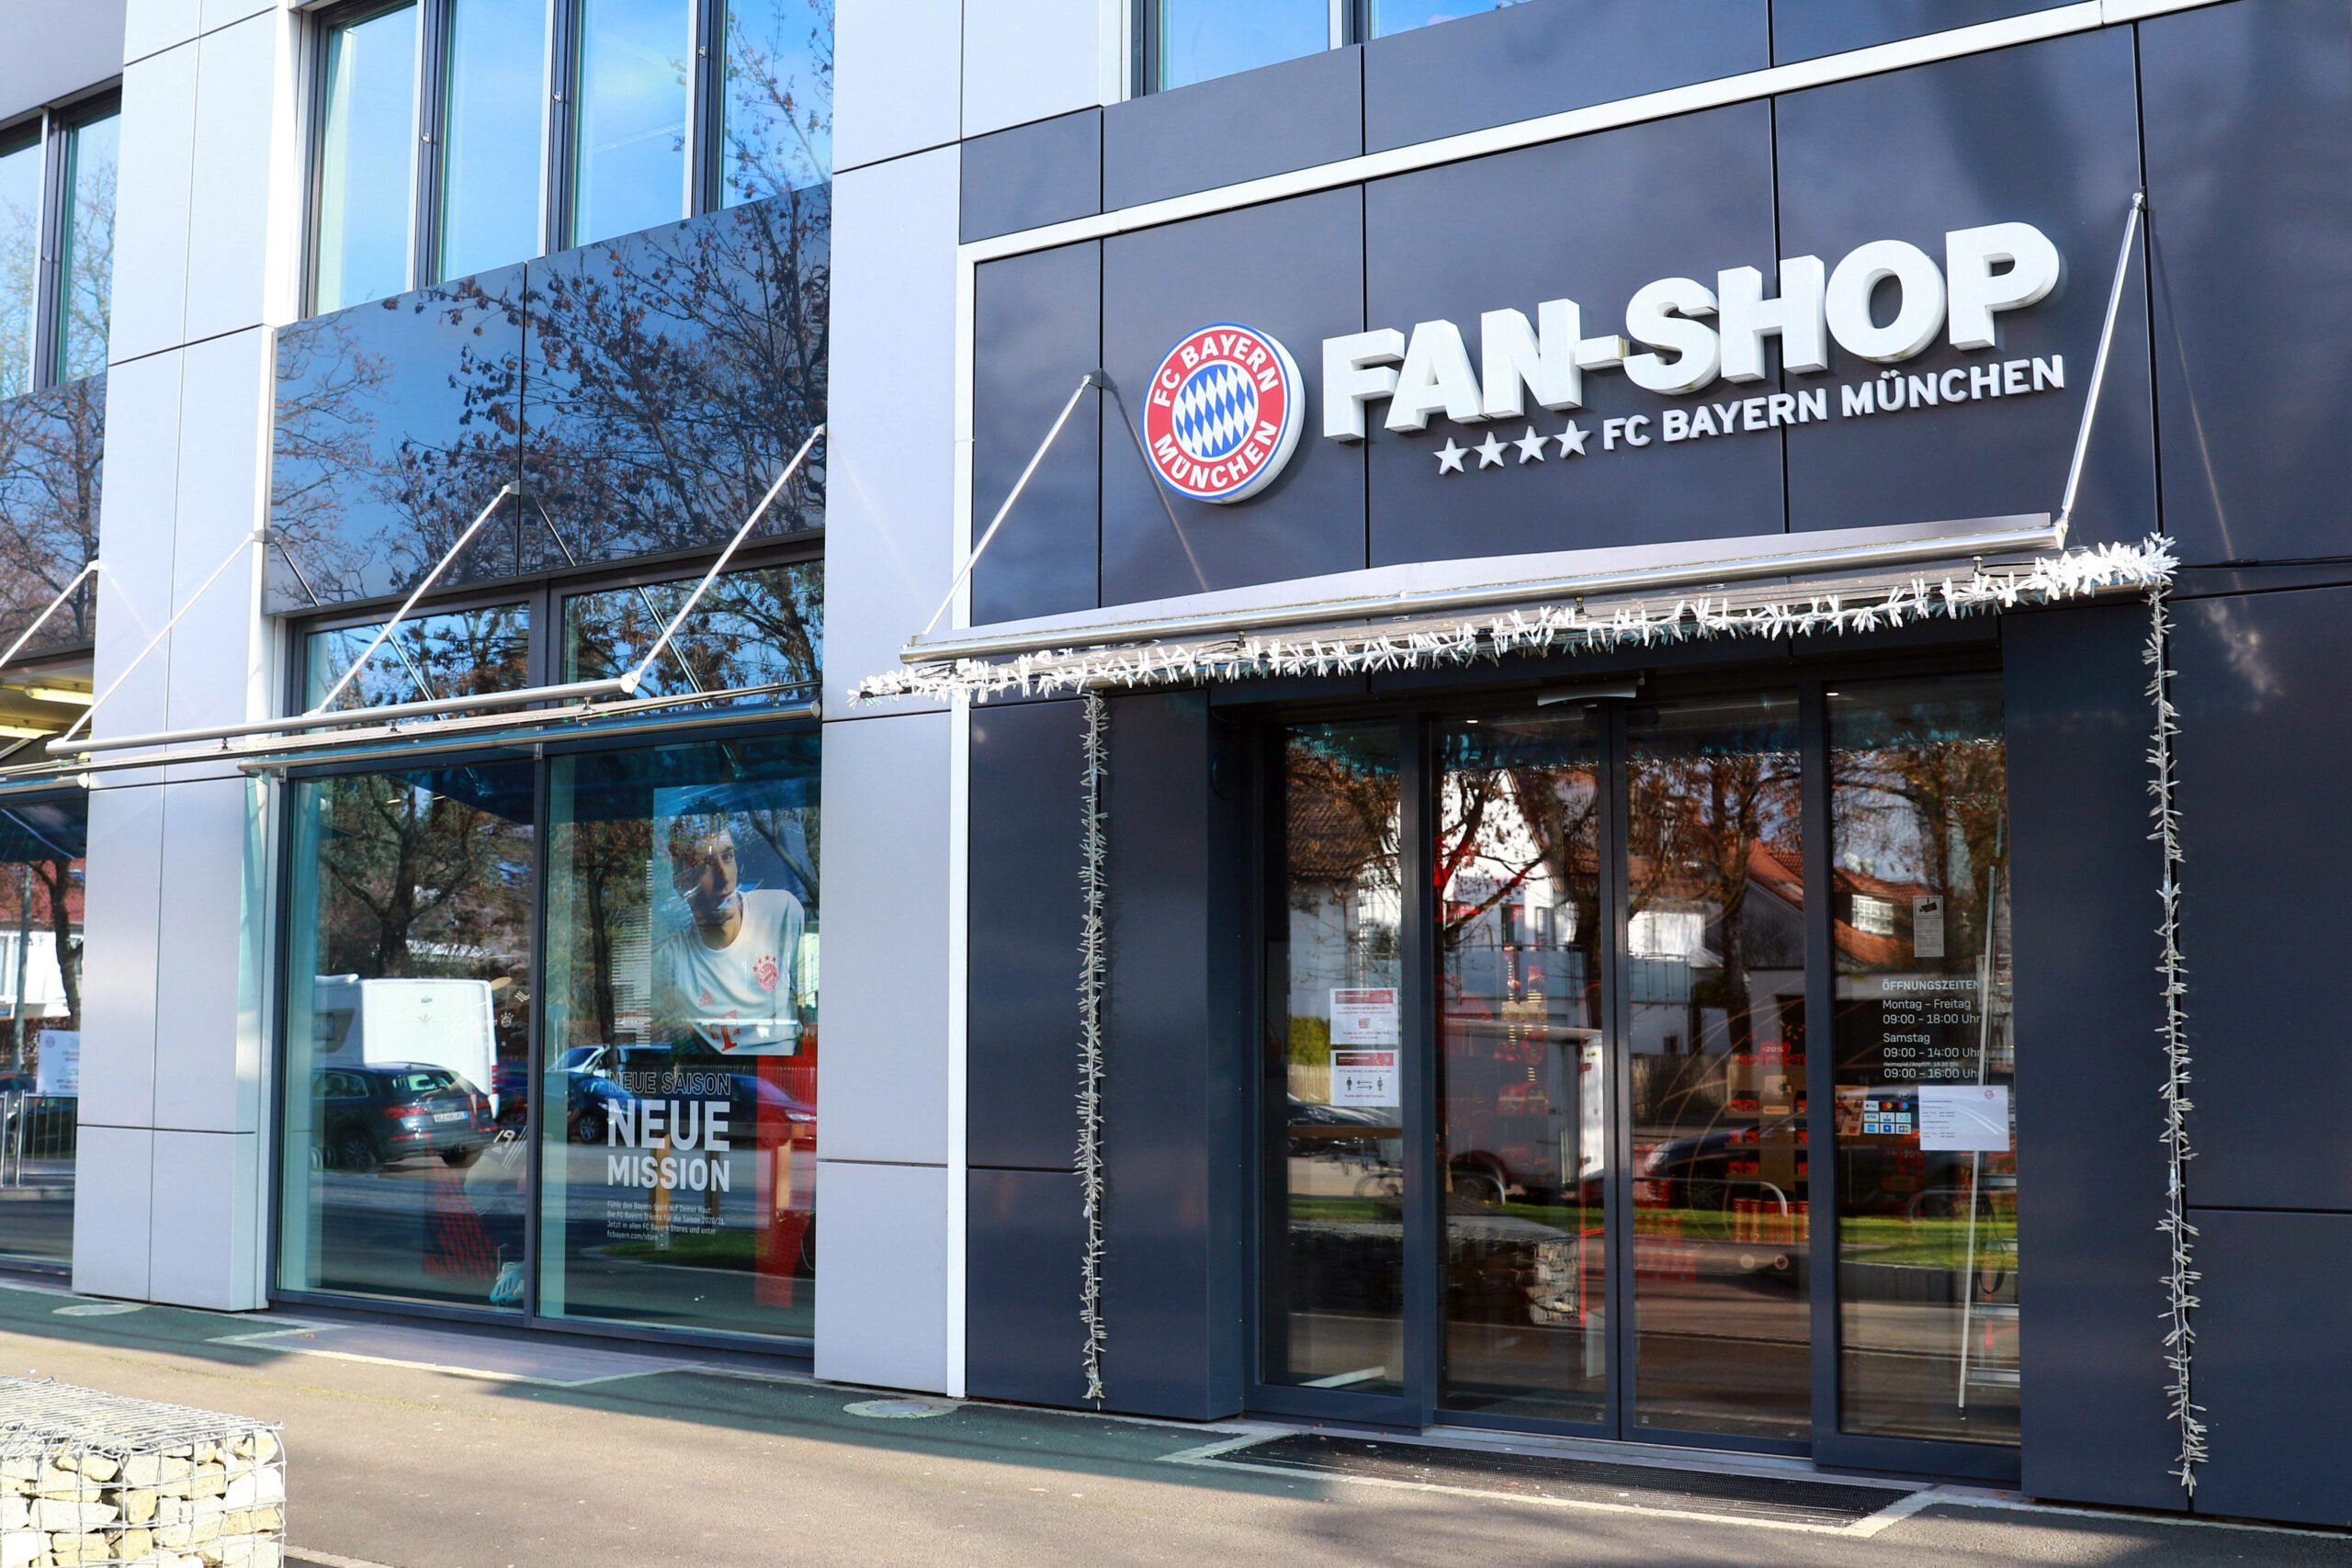 FC Bayern Shop